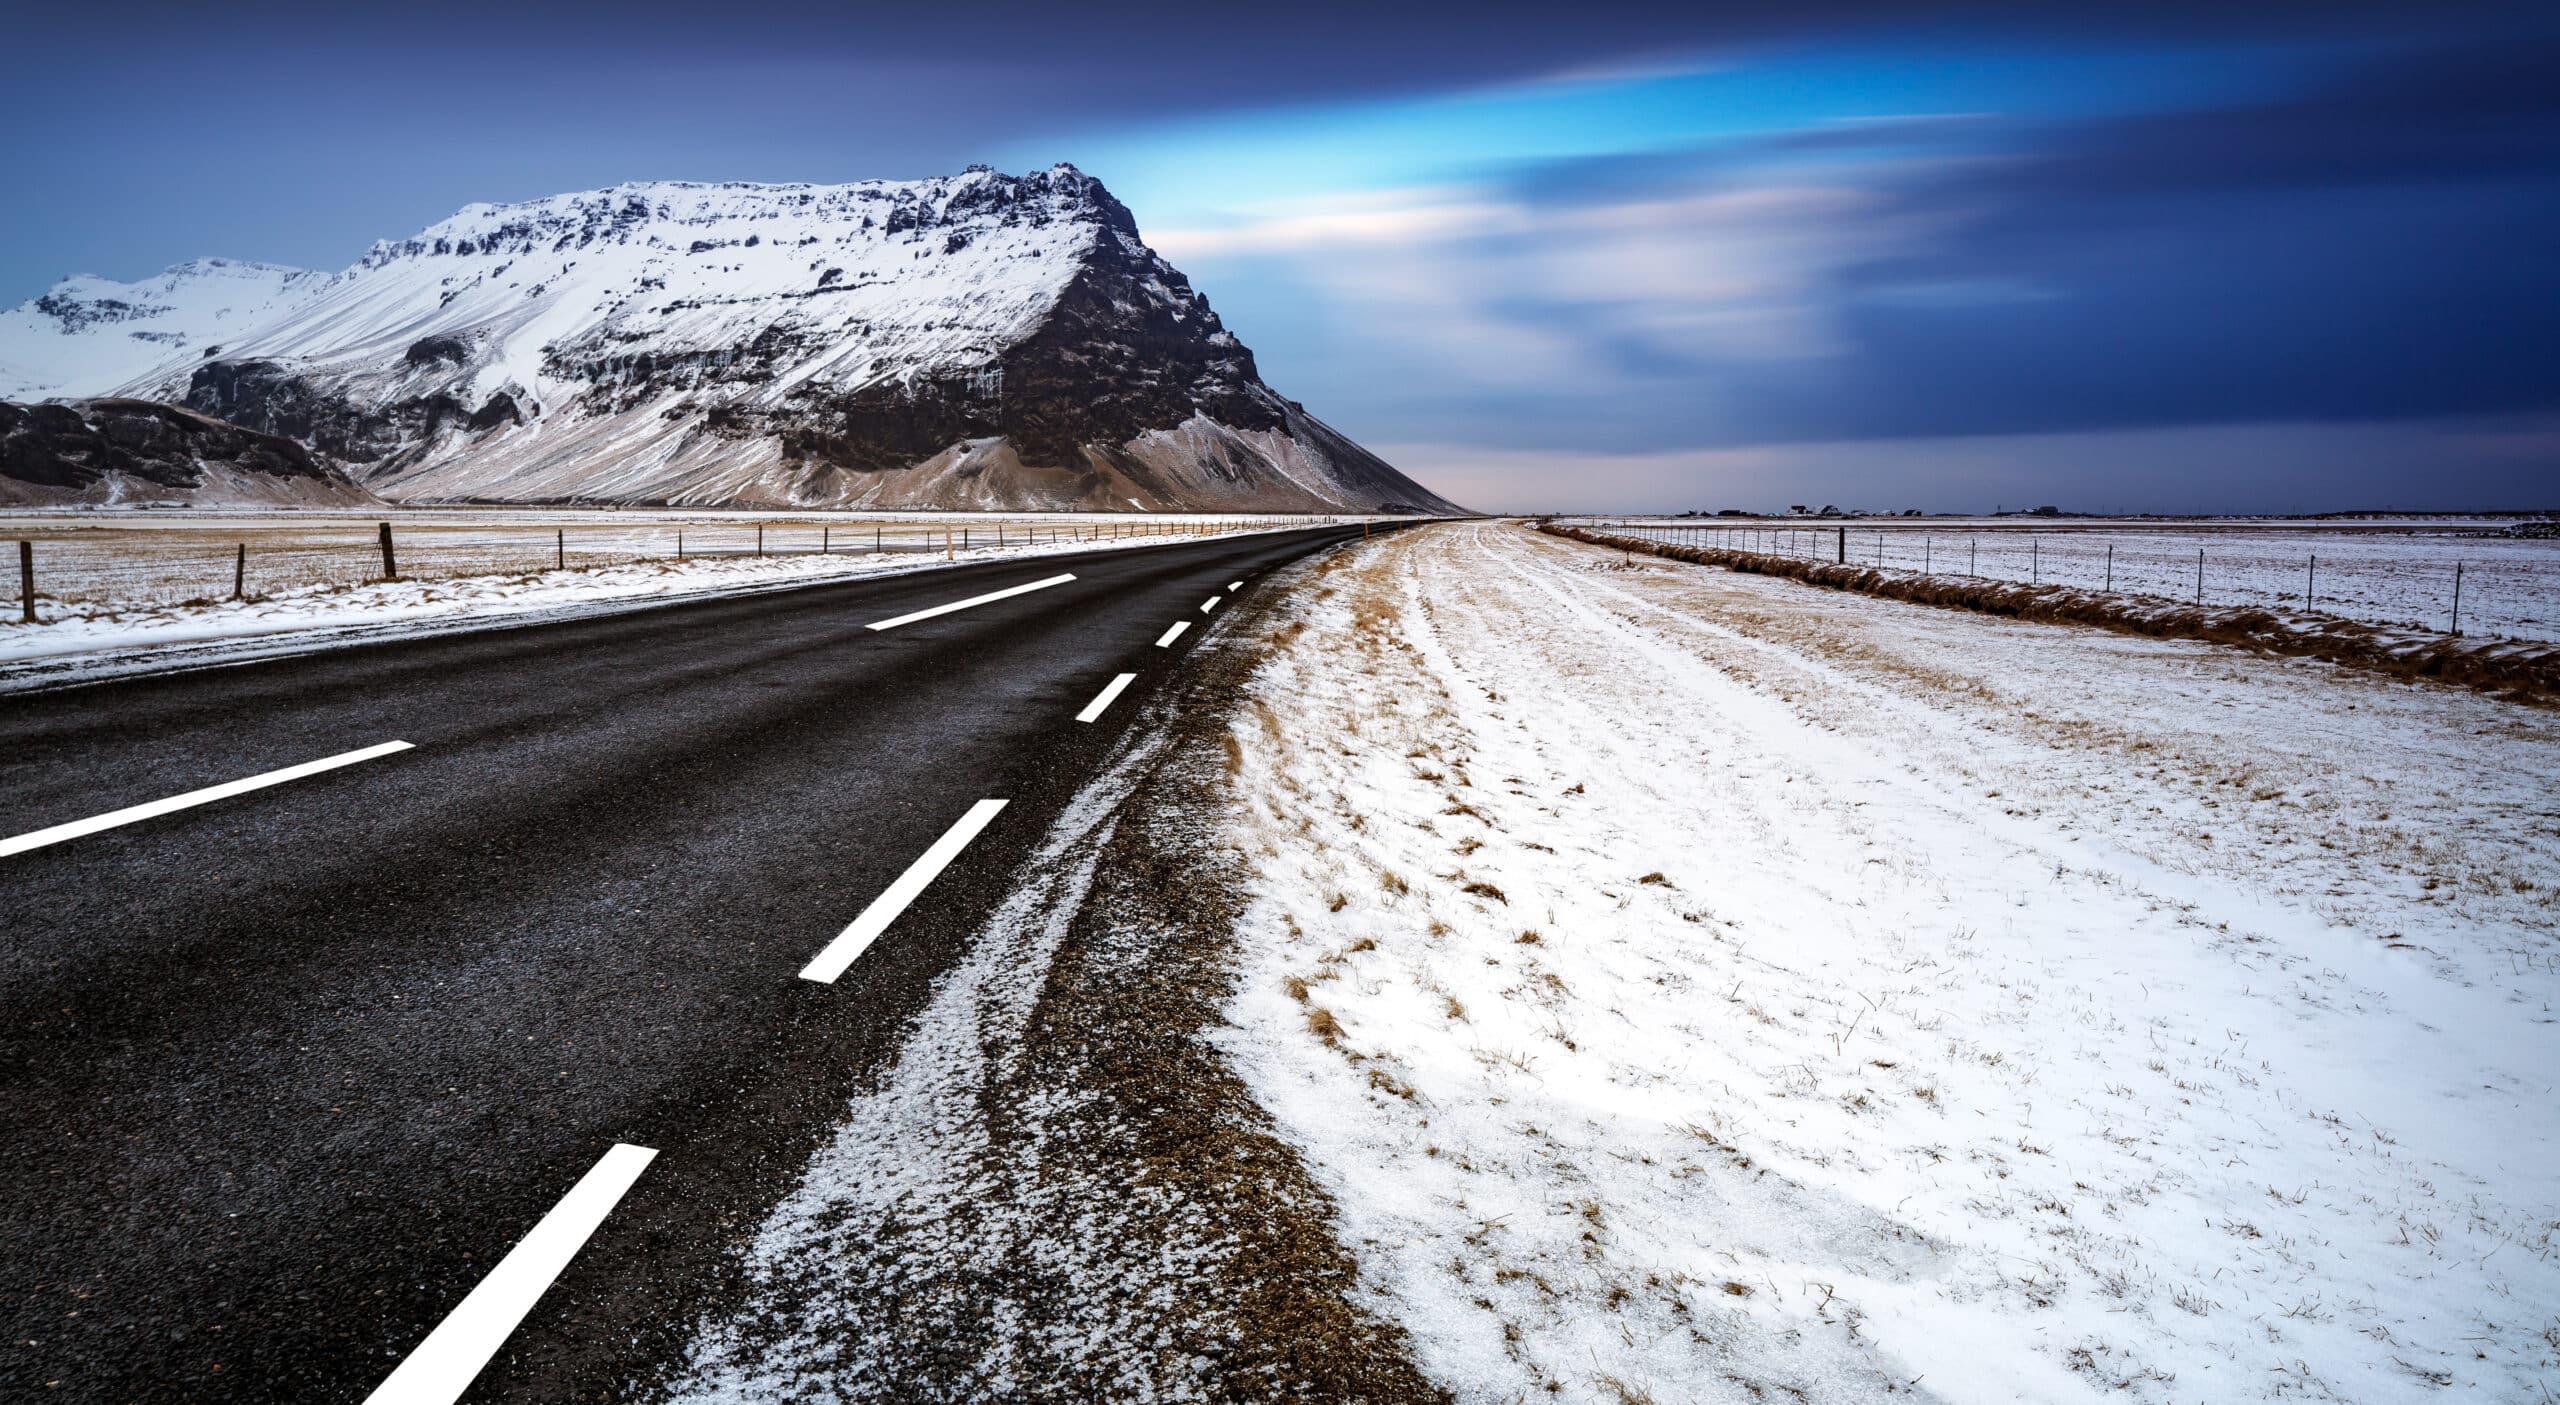 Hermoso paisaje invernal de una carretera, carretera vacía, vista tranquila de la gran montaña cubierta de nieve, invierno en Islandia.